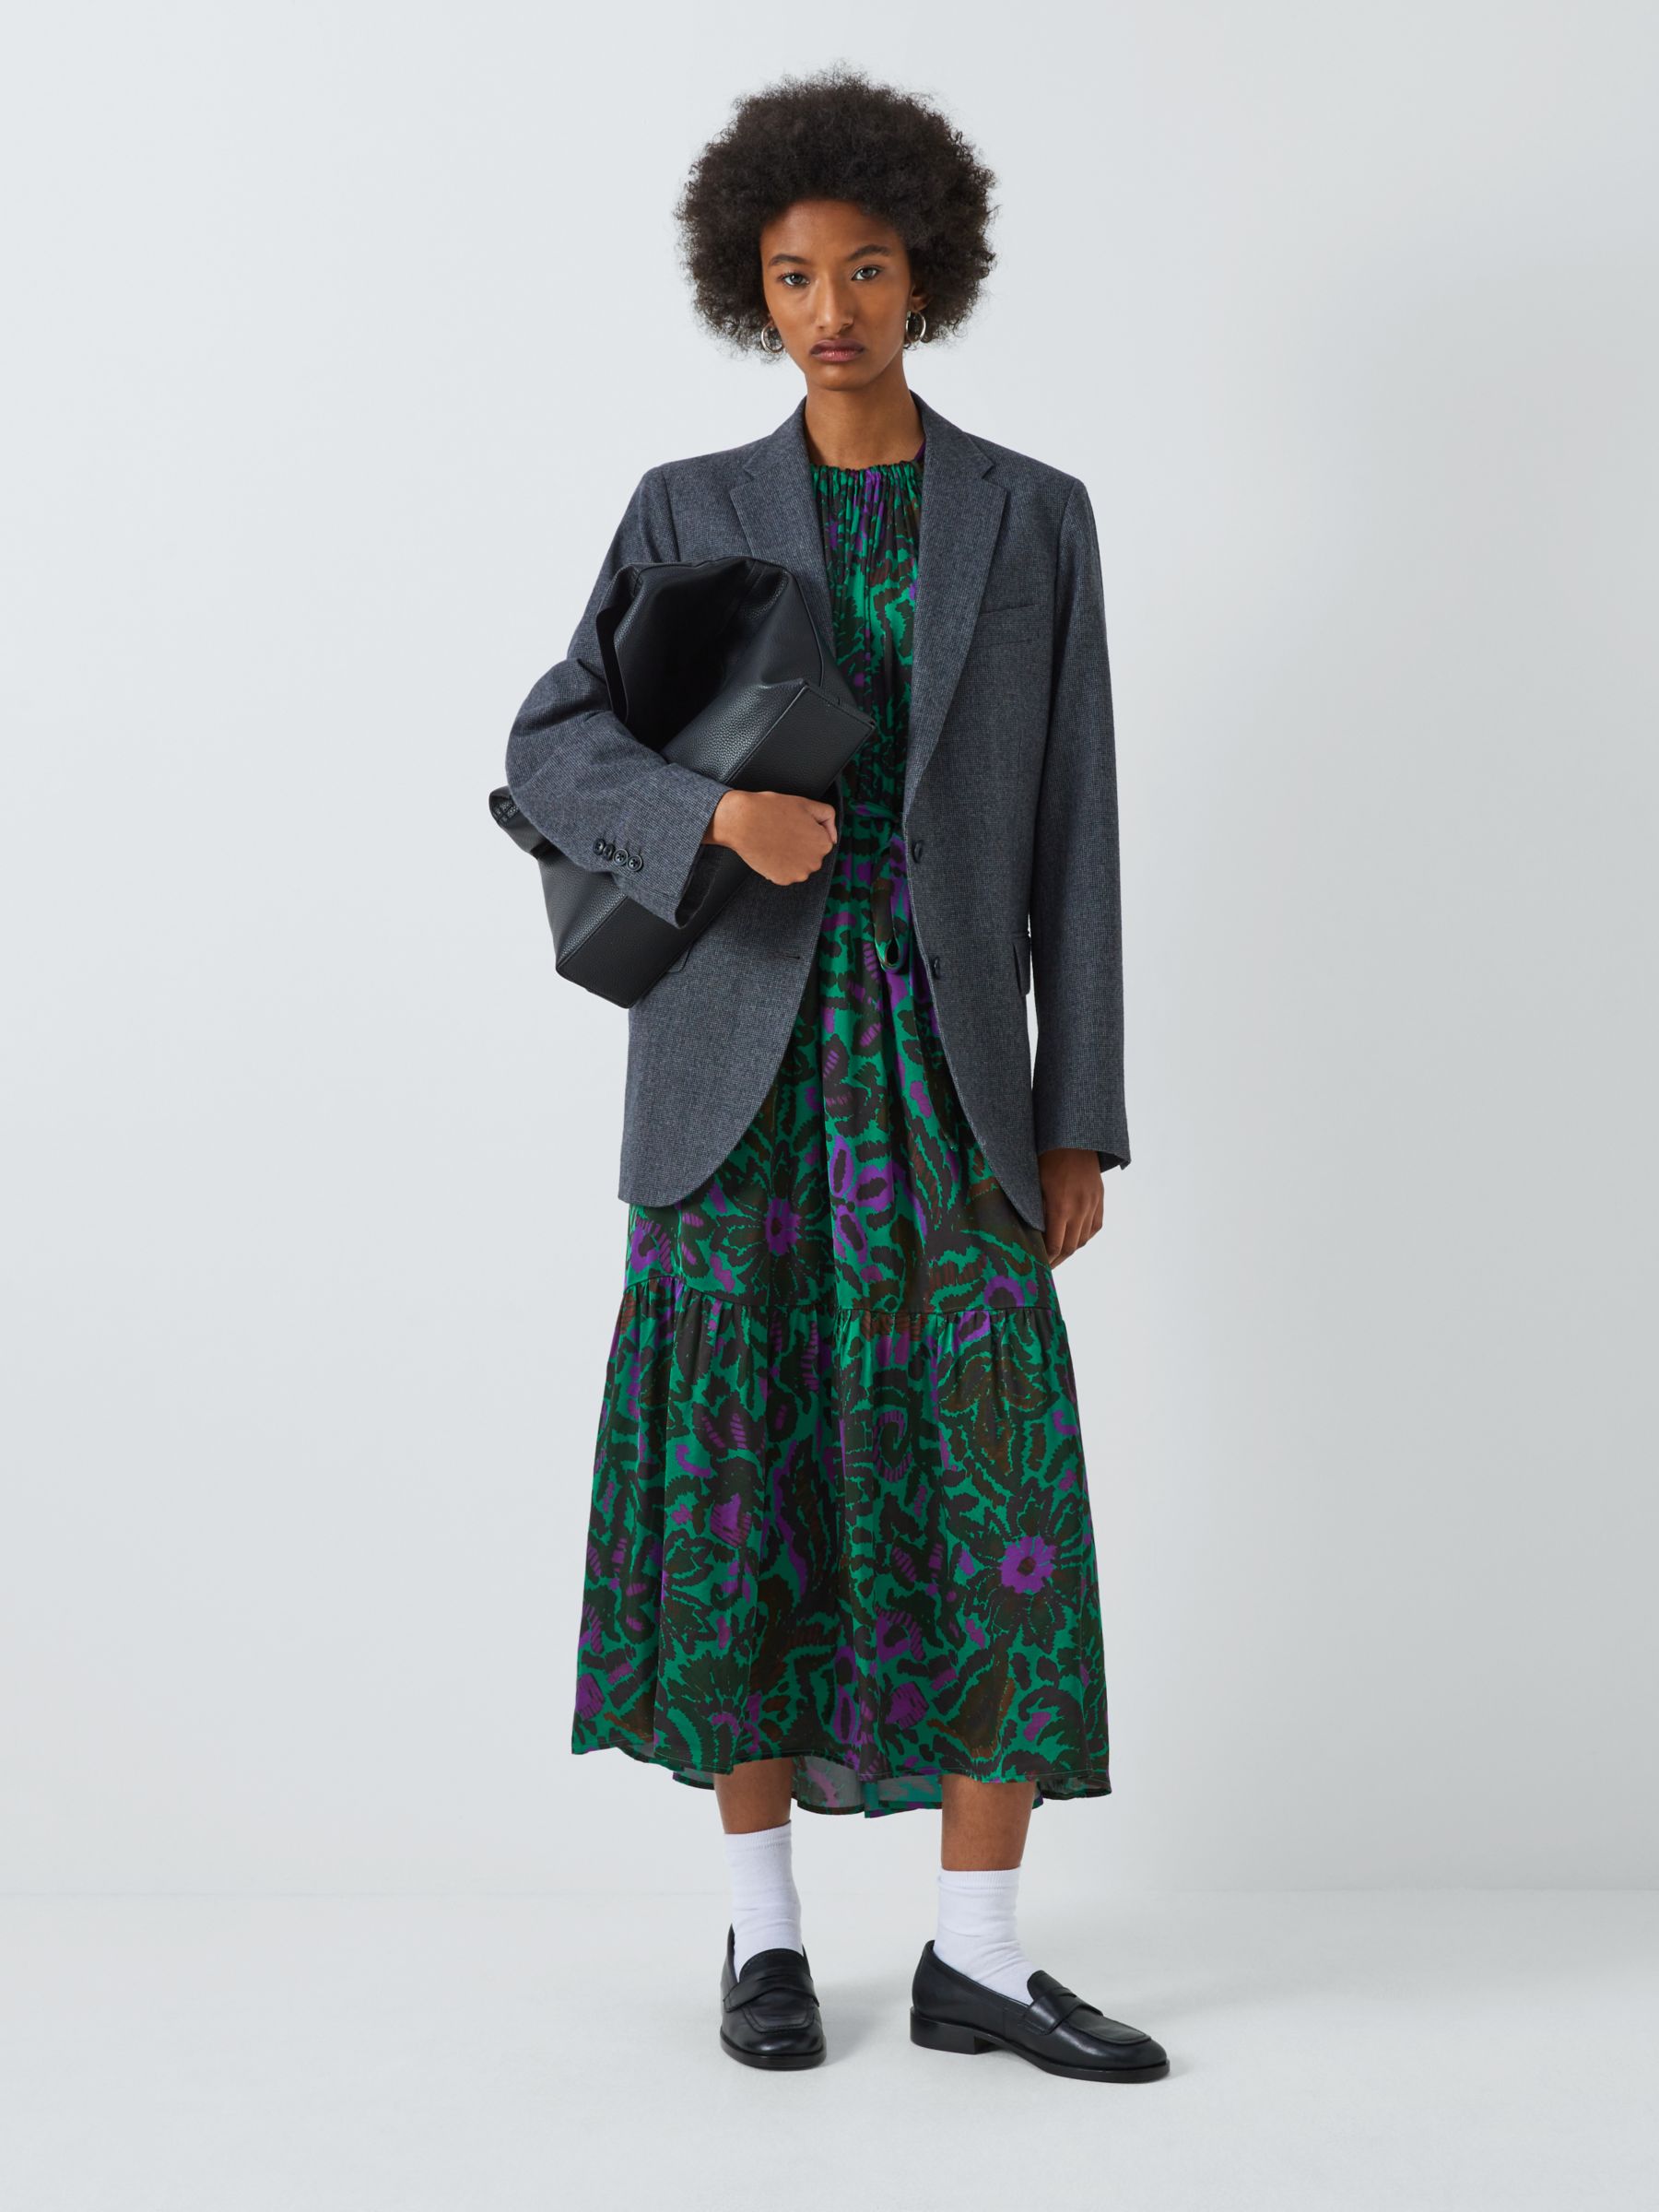 Velvet by Graham & Spencer Kareese Abstract Print Satin Maxi Dress, Green/Multi, M